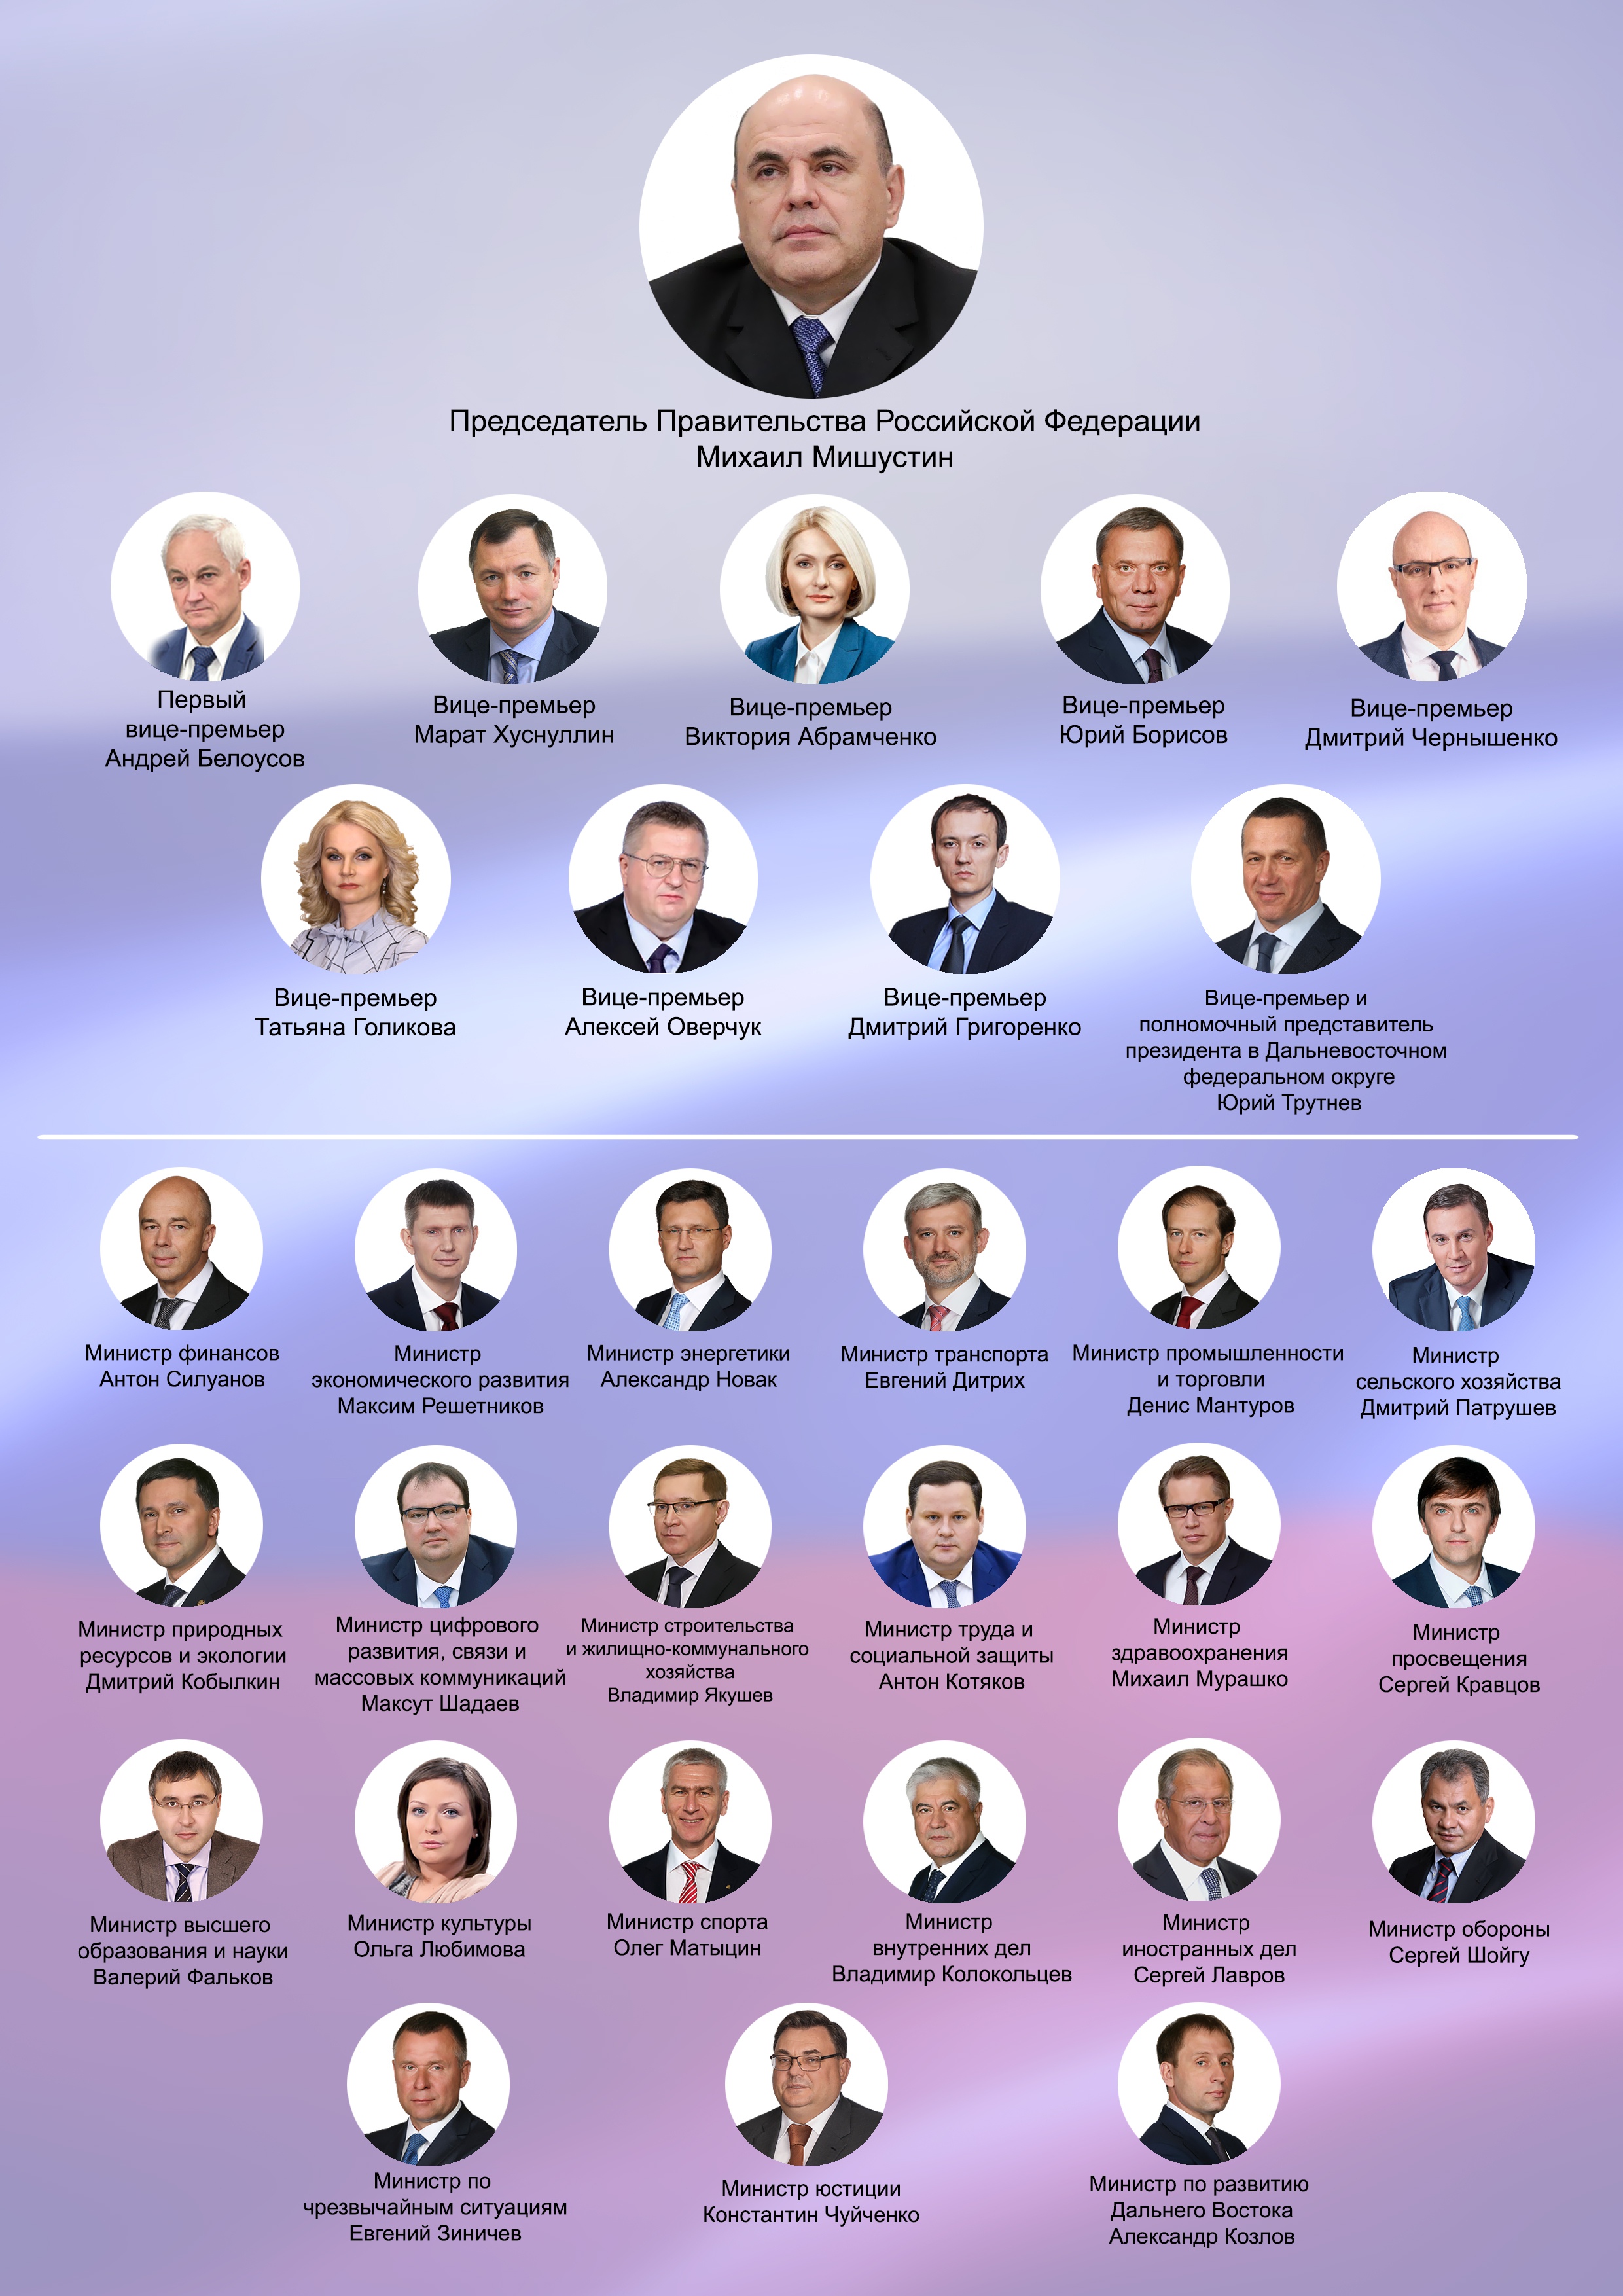 олигархи москвы список